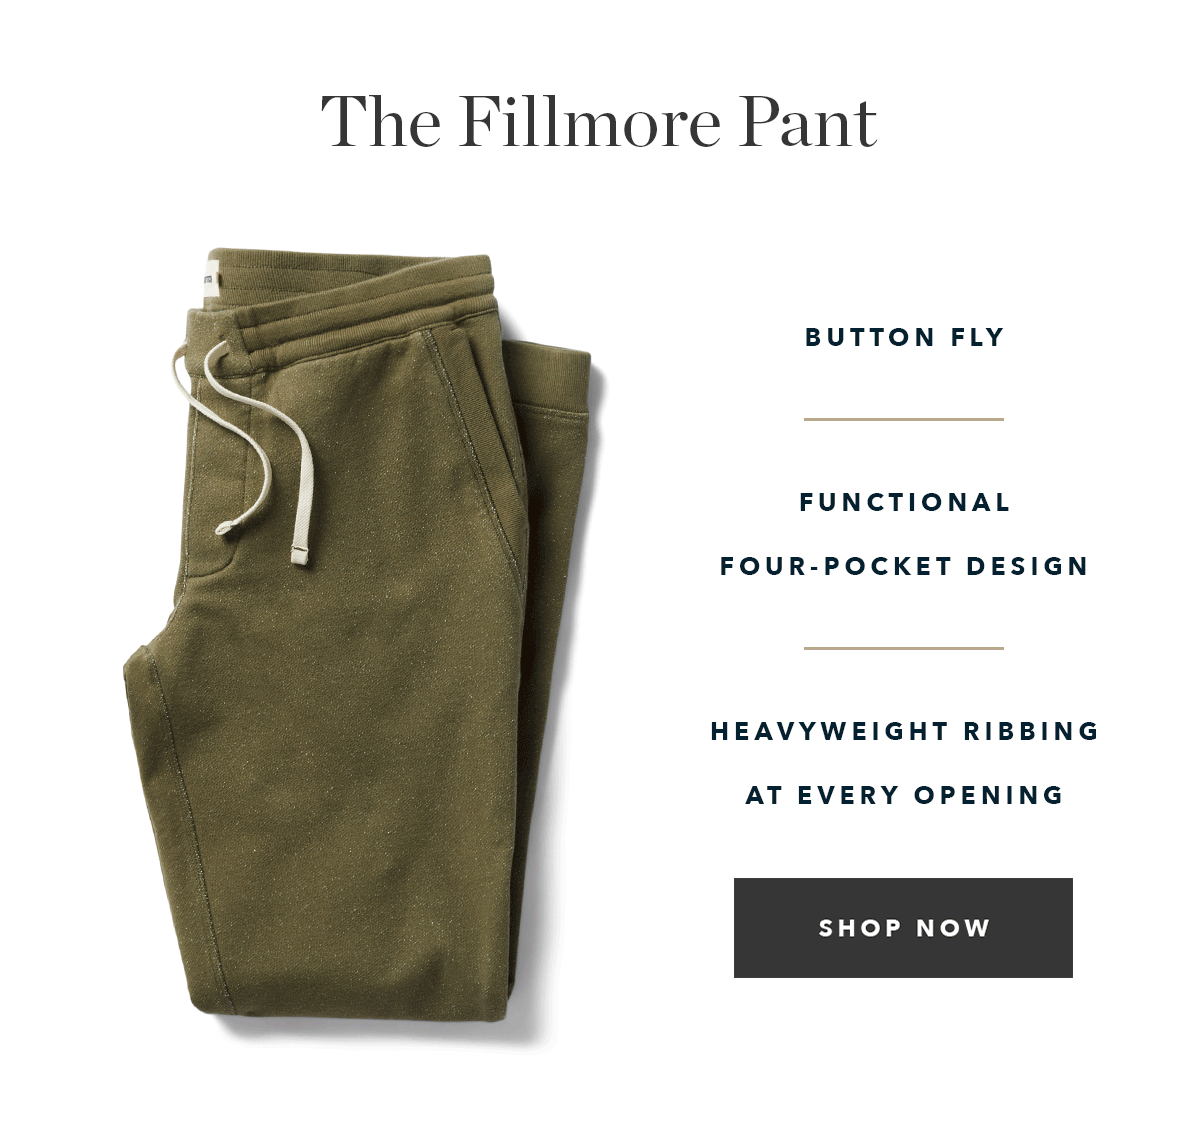 The Fillmore Pant